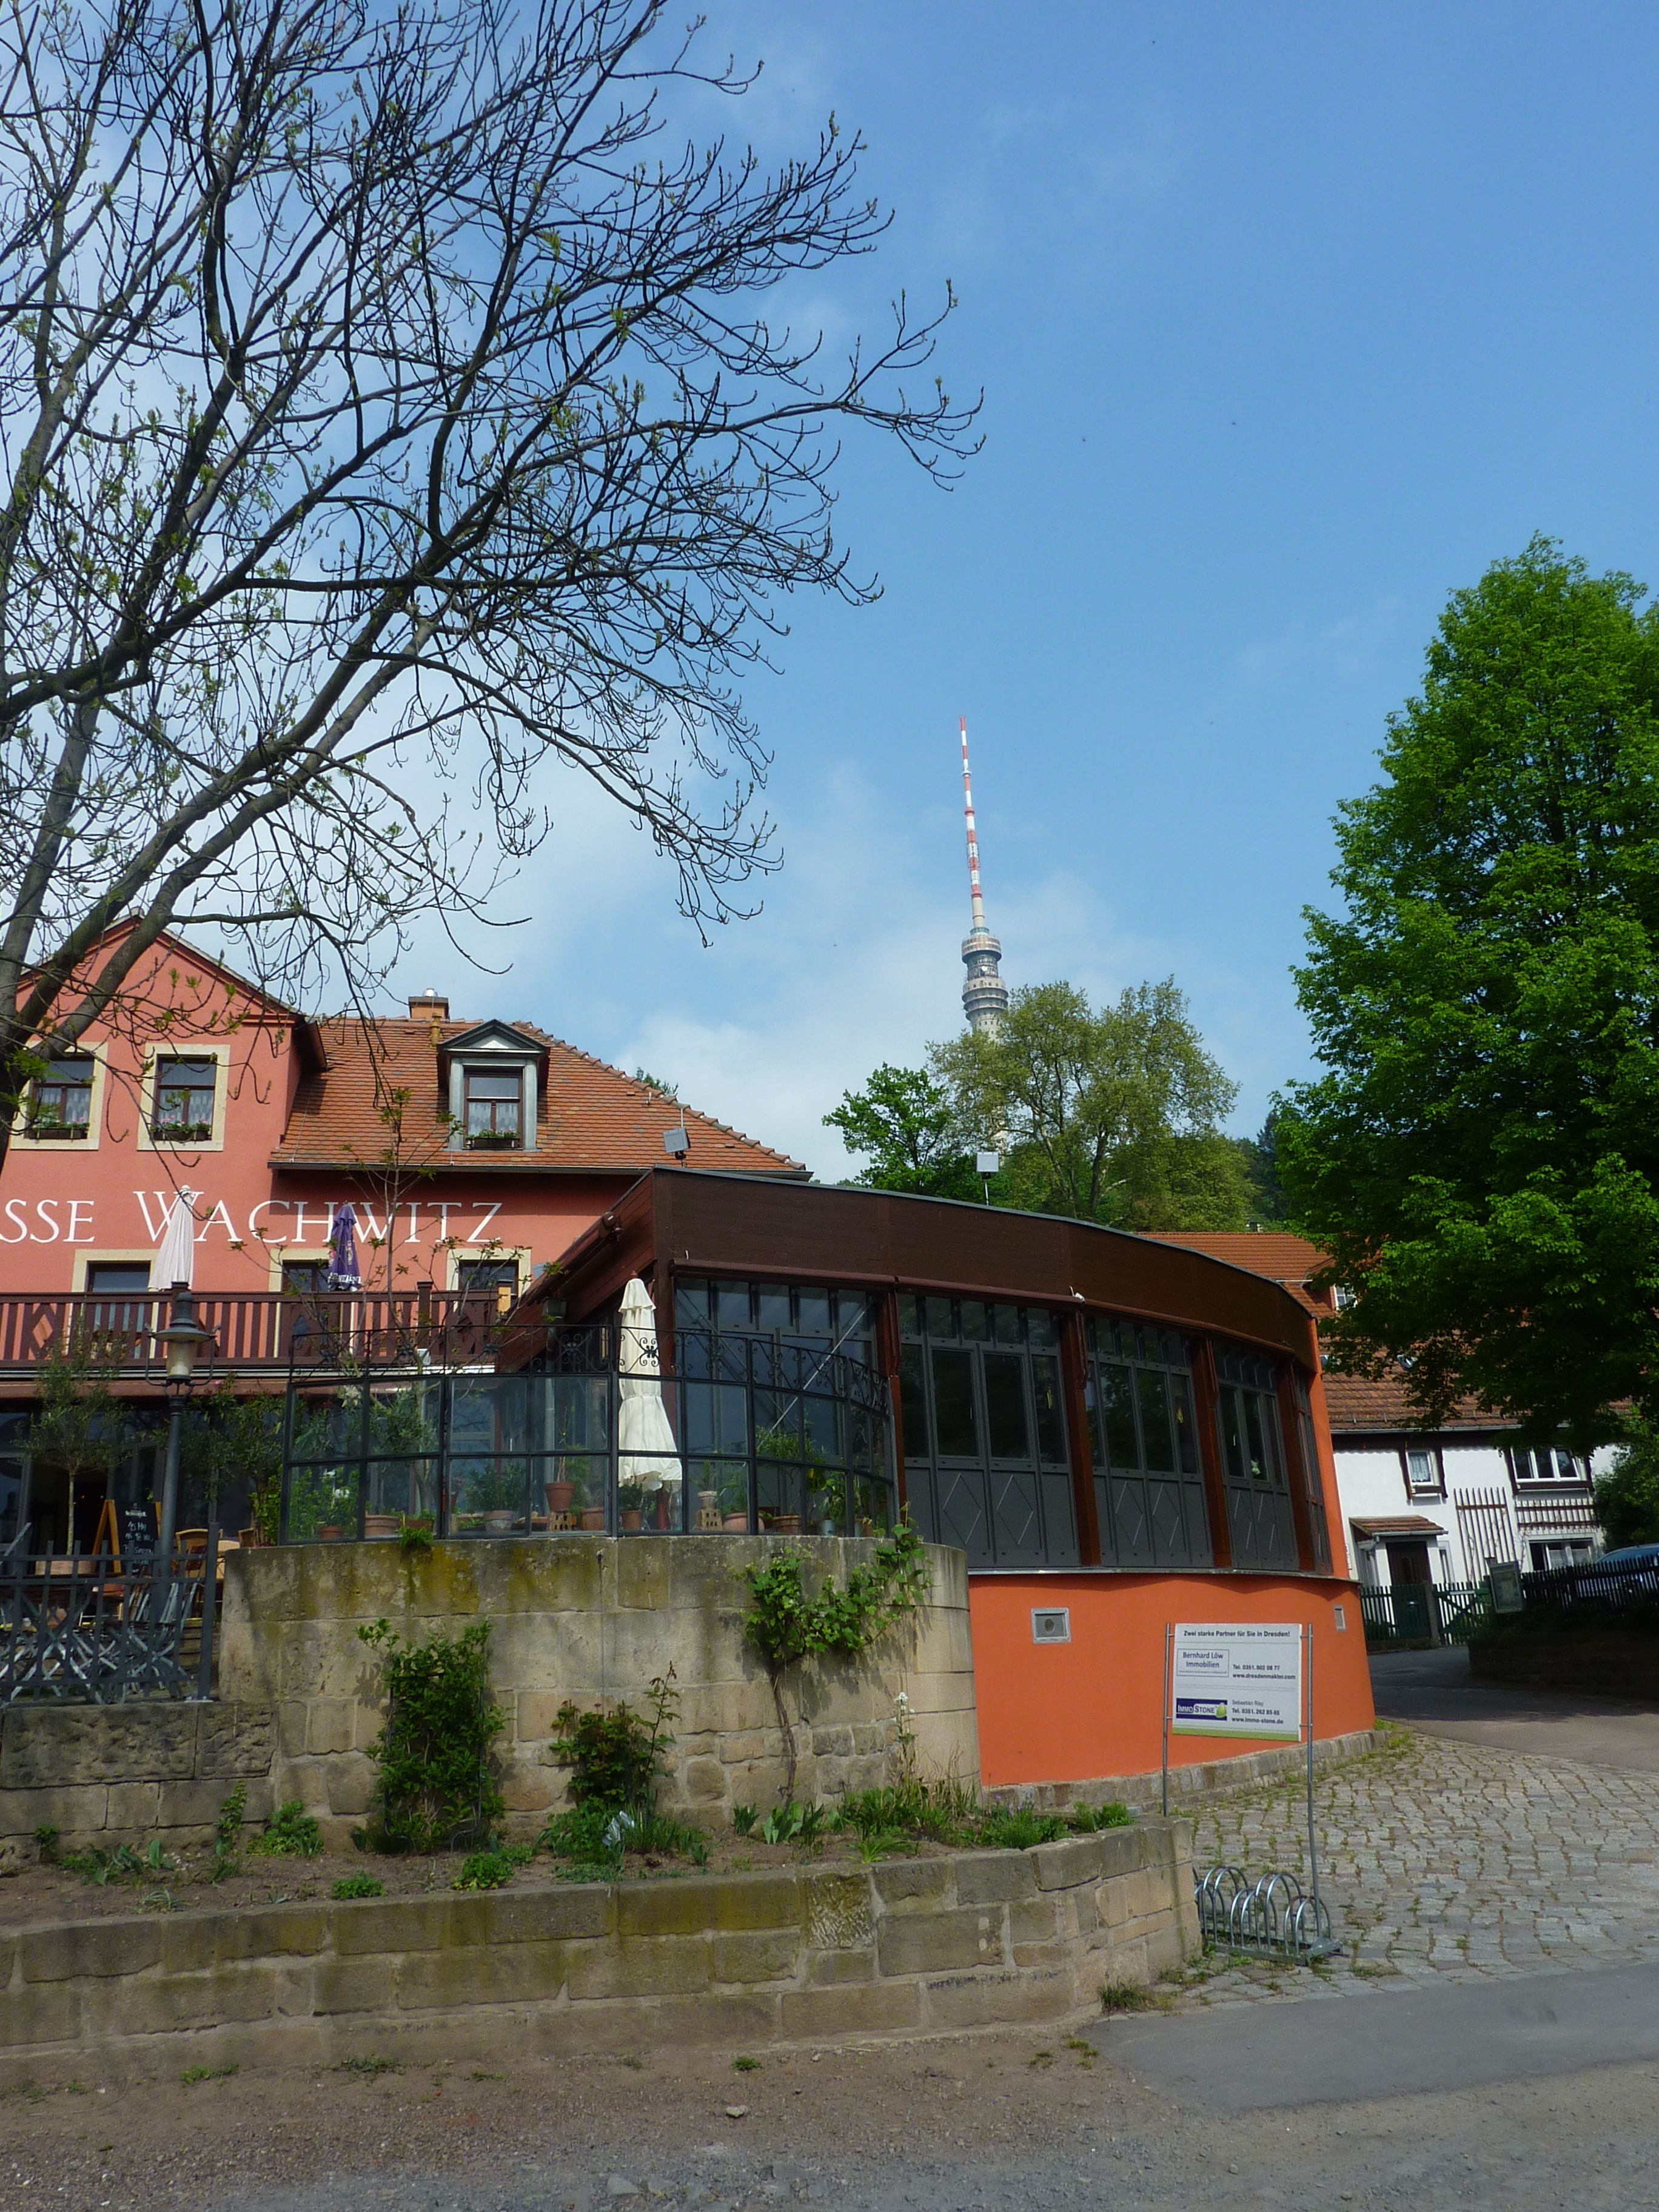 Hotel und Restaurant  Elbterrasse Wachwitz in Dresden.